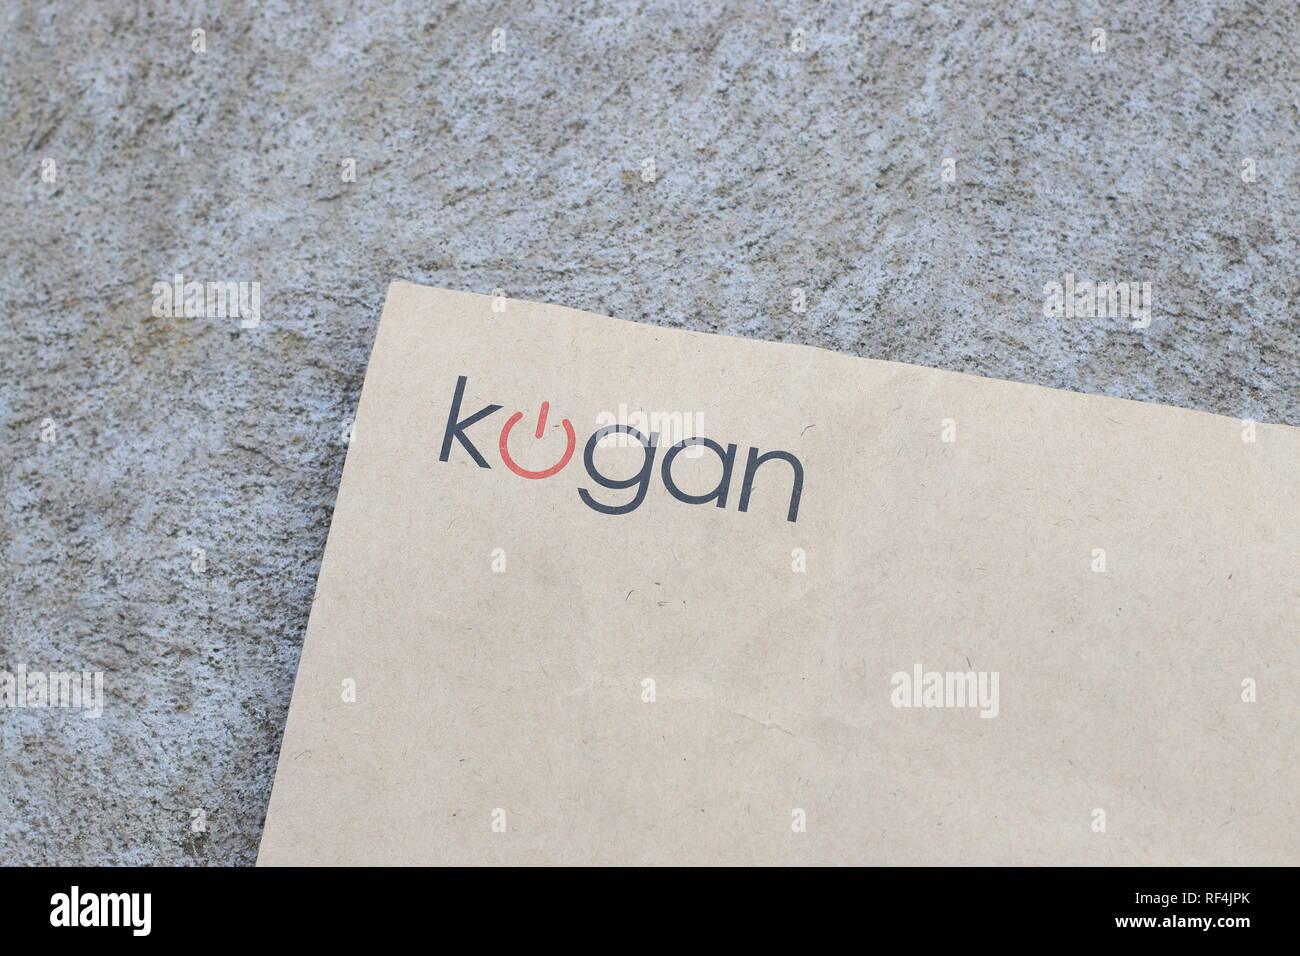 Kogan - Australische retail business Stockfoto